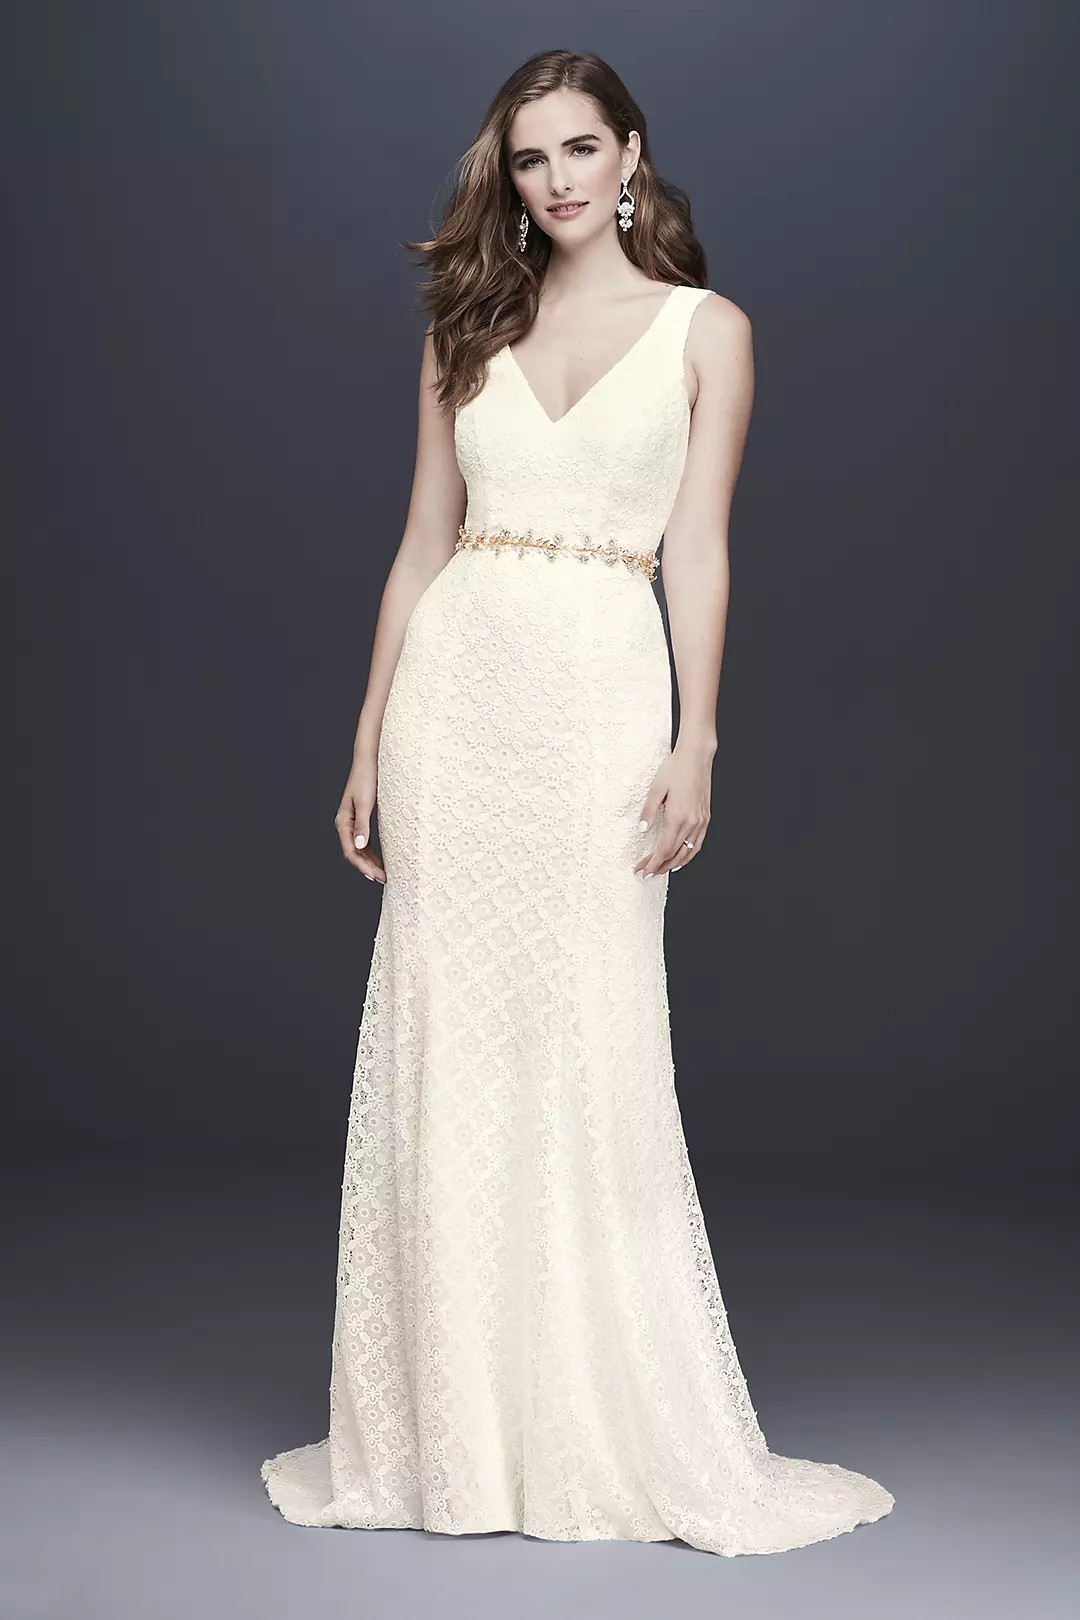 Geometric Lace V-Neck Sheath Wedding Dress Image